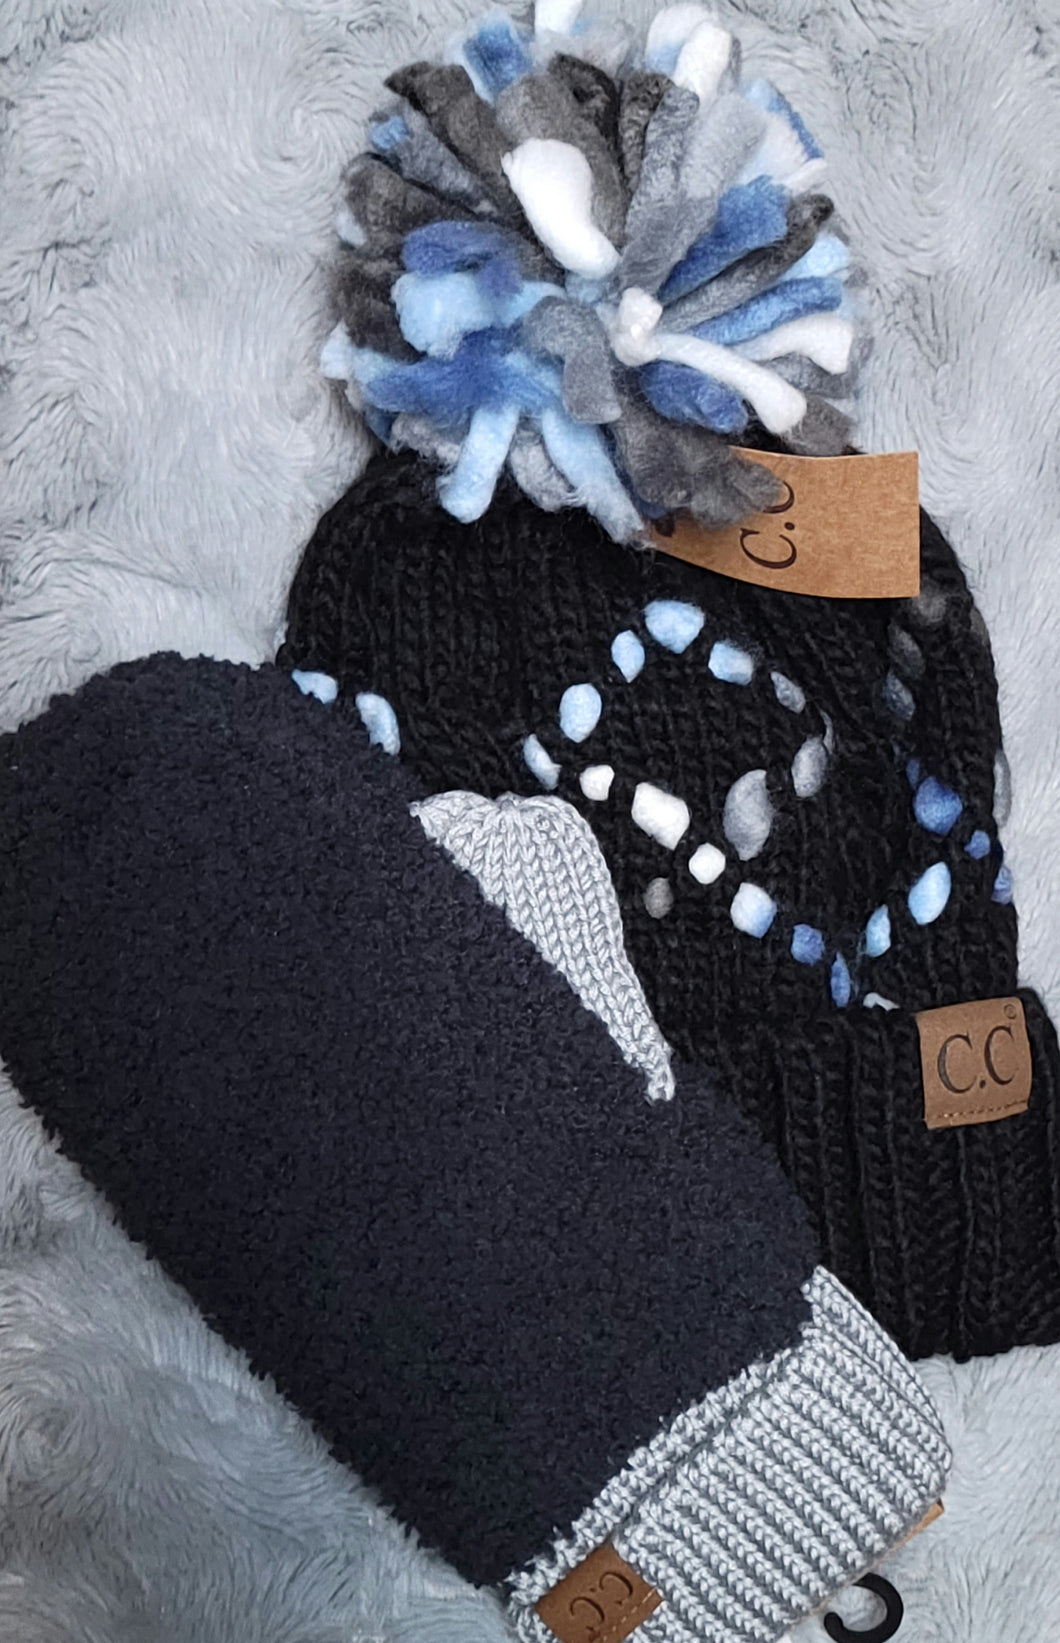 CC Beanie Hat - Chunky Knit Yarn w/ Pom - Black